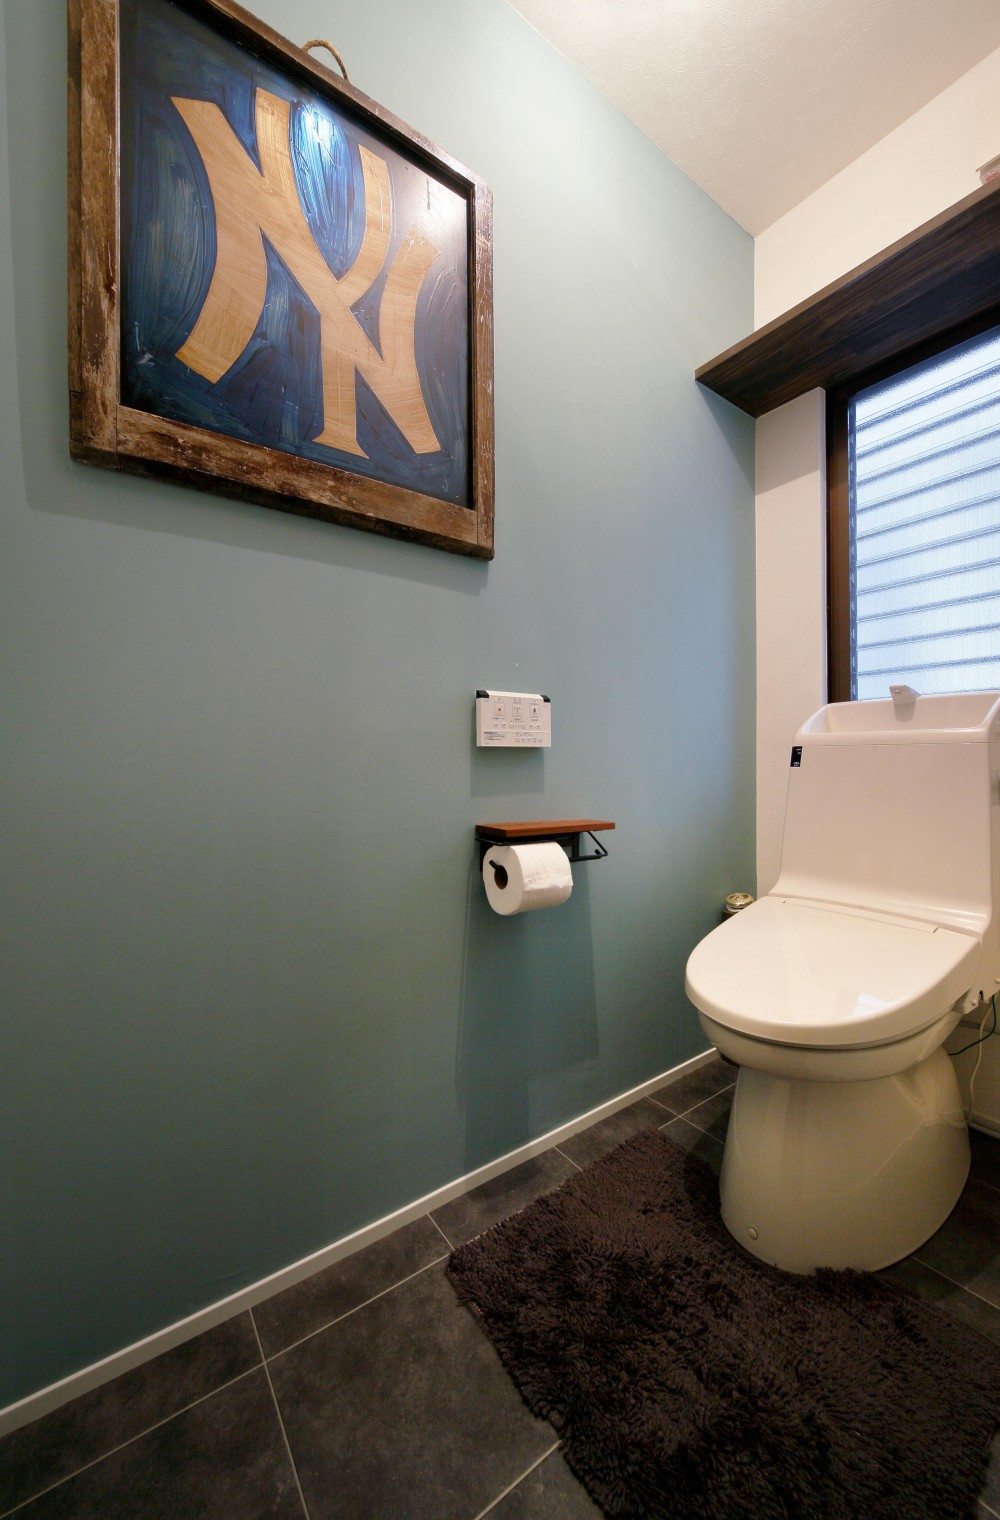 二世帯住居を単世帯にリノベーション (落ち着いた壁色のトイレ)